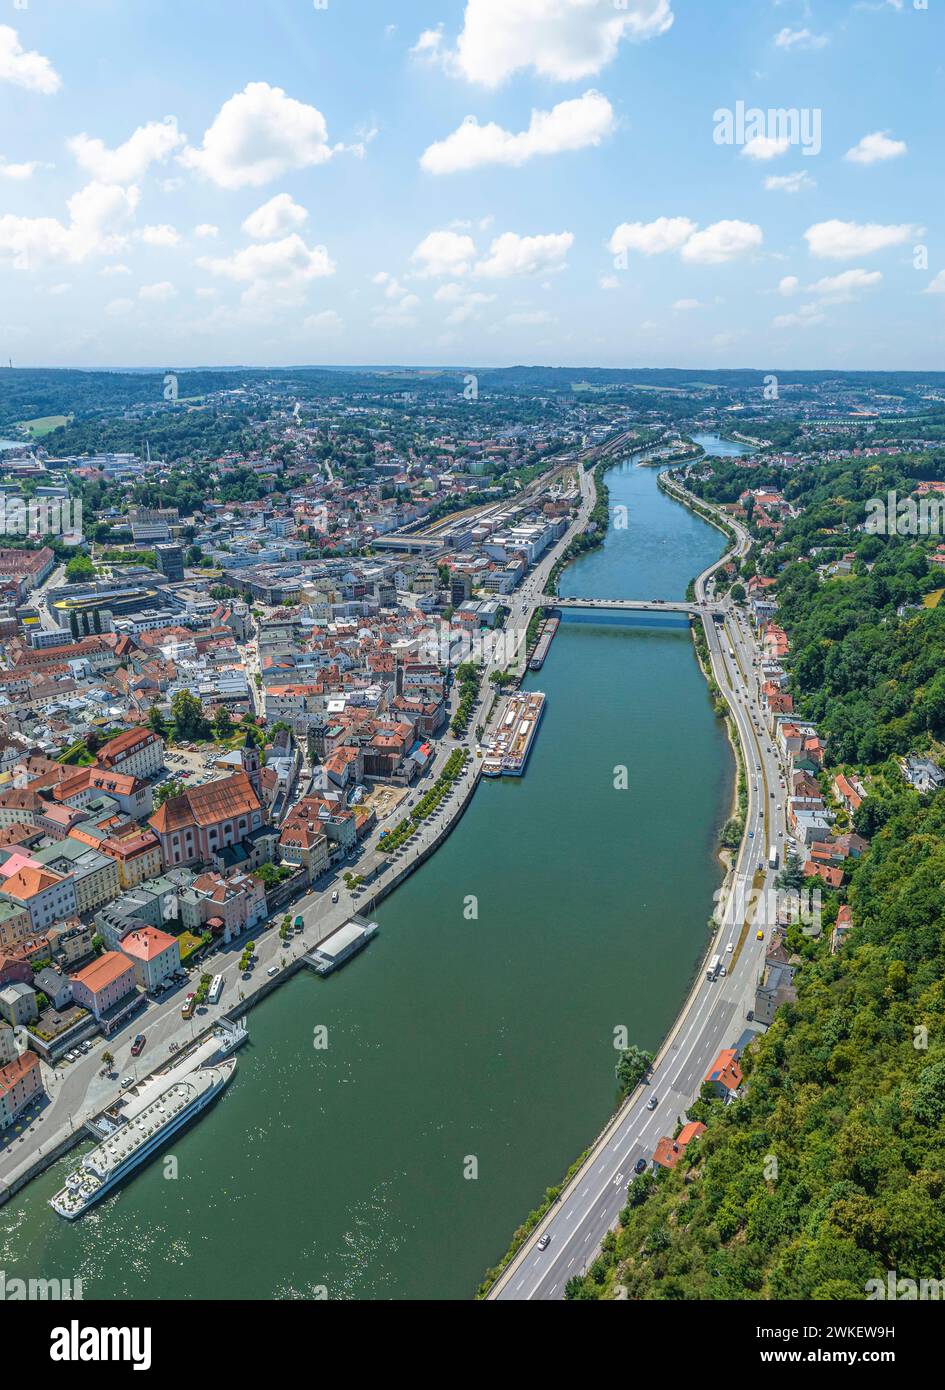 Die Dreiflüssestadt Passau am Zusammenfluß von Donau, Inn und Ilz im Luftbild Ausblick auf die Universitätsstadt Passau in Niederbayern Passau Georgsb Stock Photo